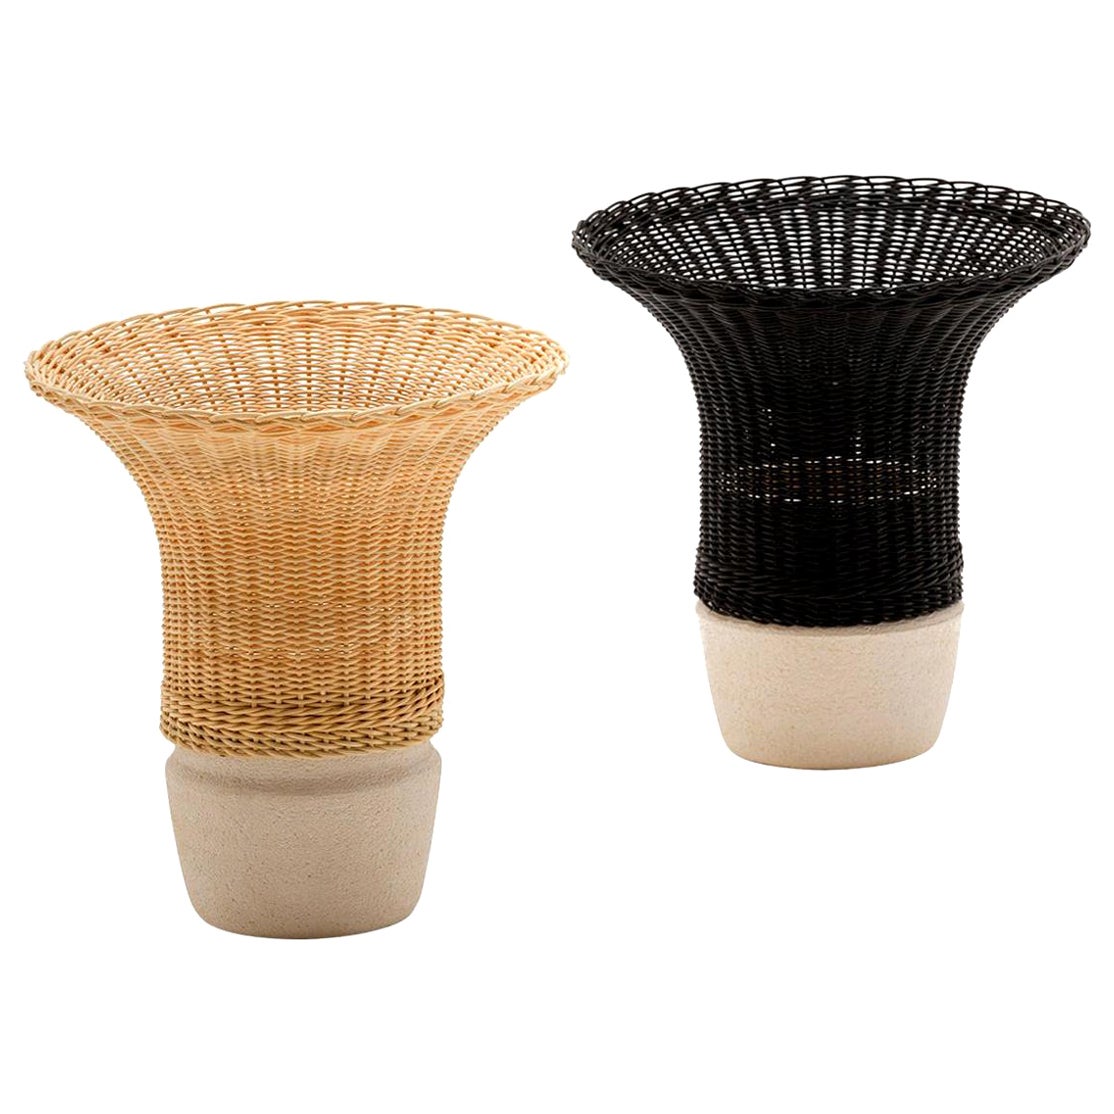 Nodo Woven Wicker and Ceramic 21st Century Vase B/ Natural, by Bottega Intreccio